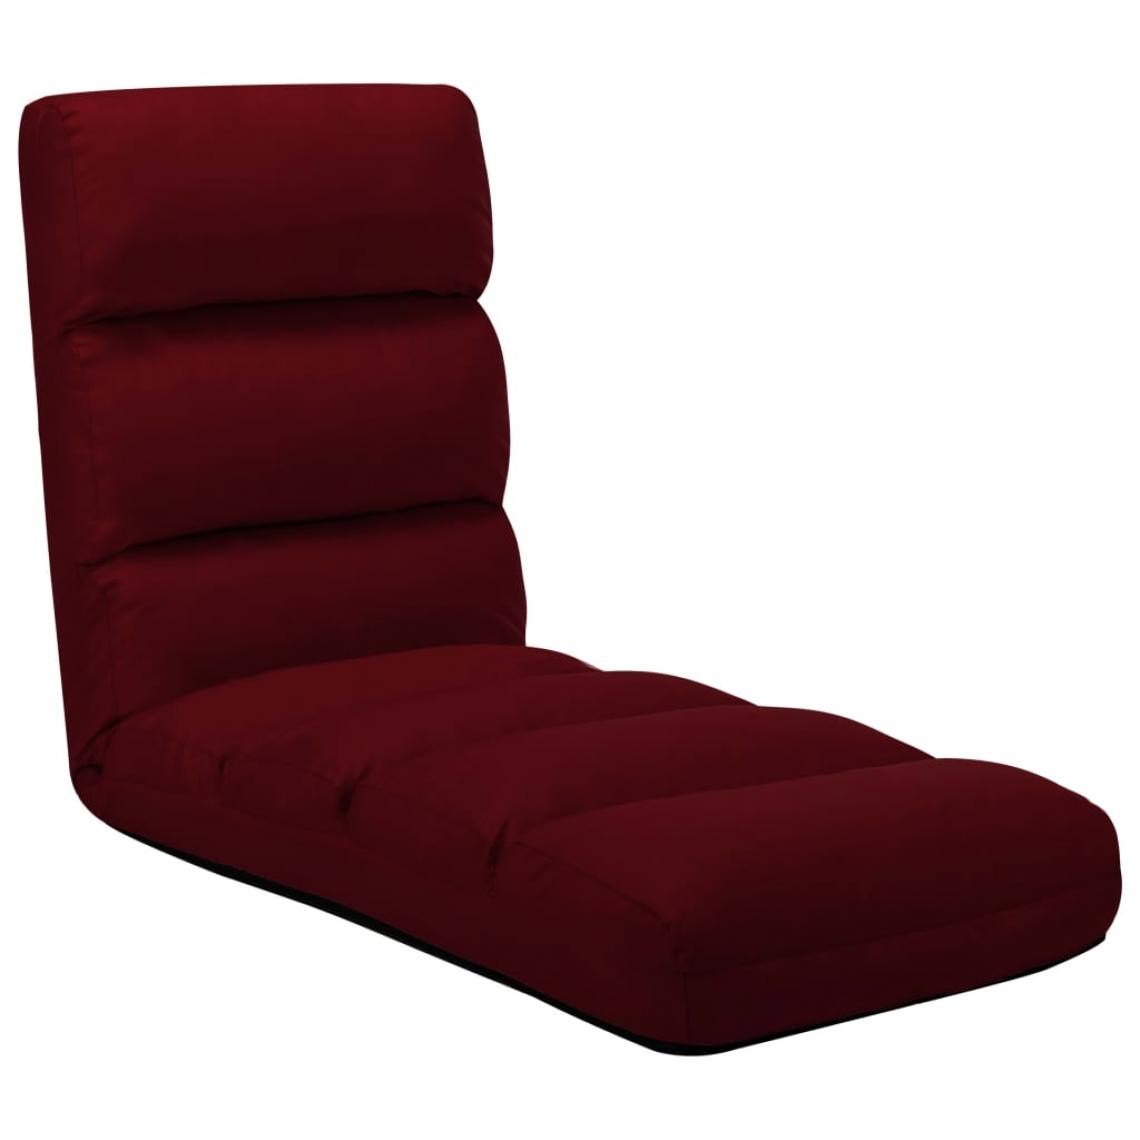 Vidaxl - vidaXL Chaise pliable de sol Rouge bordeaux Similicuir - Transats, chaises longues